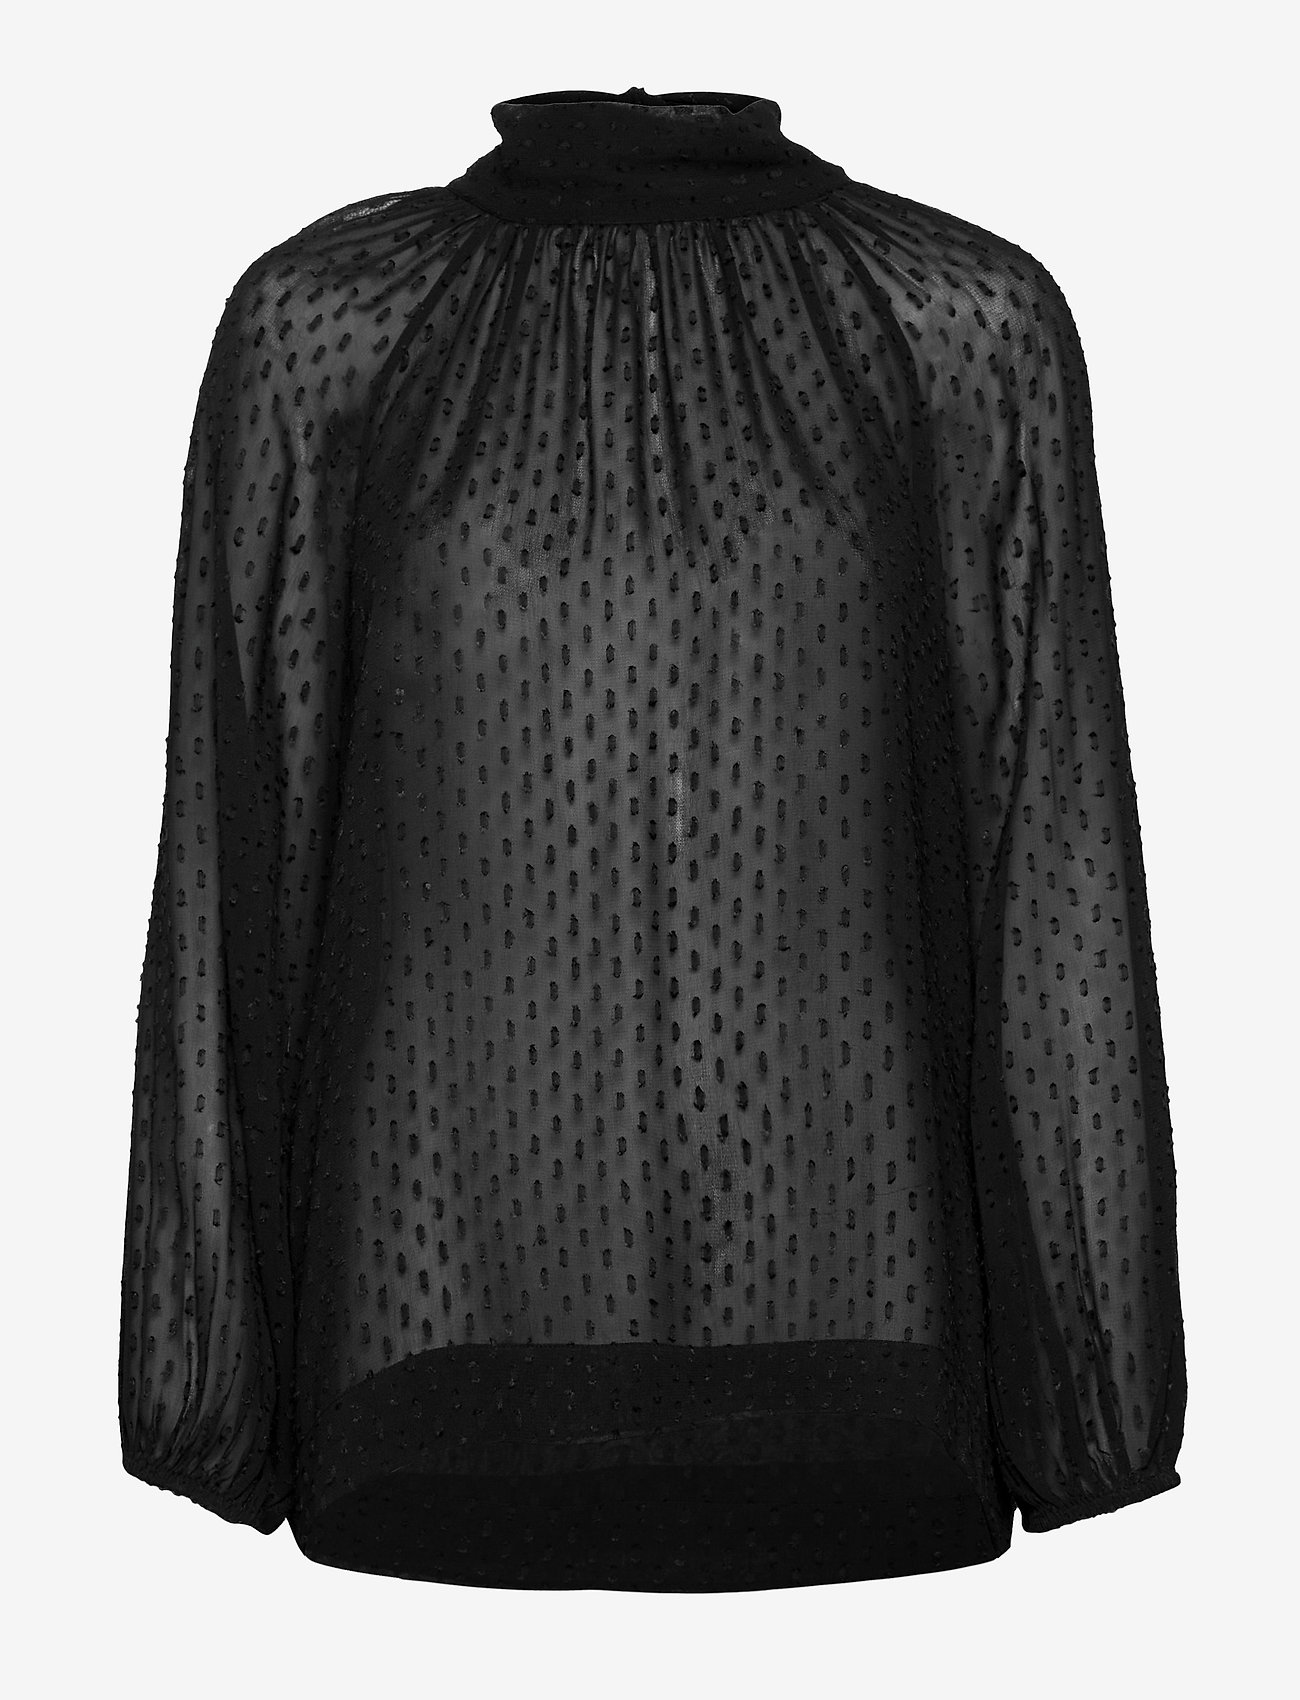 Day Birger et Mikkelsen - Day Float - long-sleeved blouses - black - 0